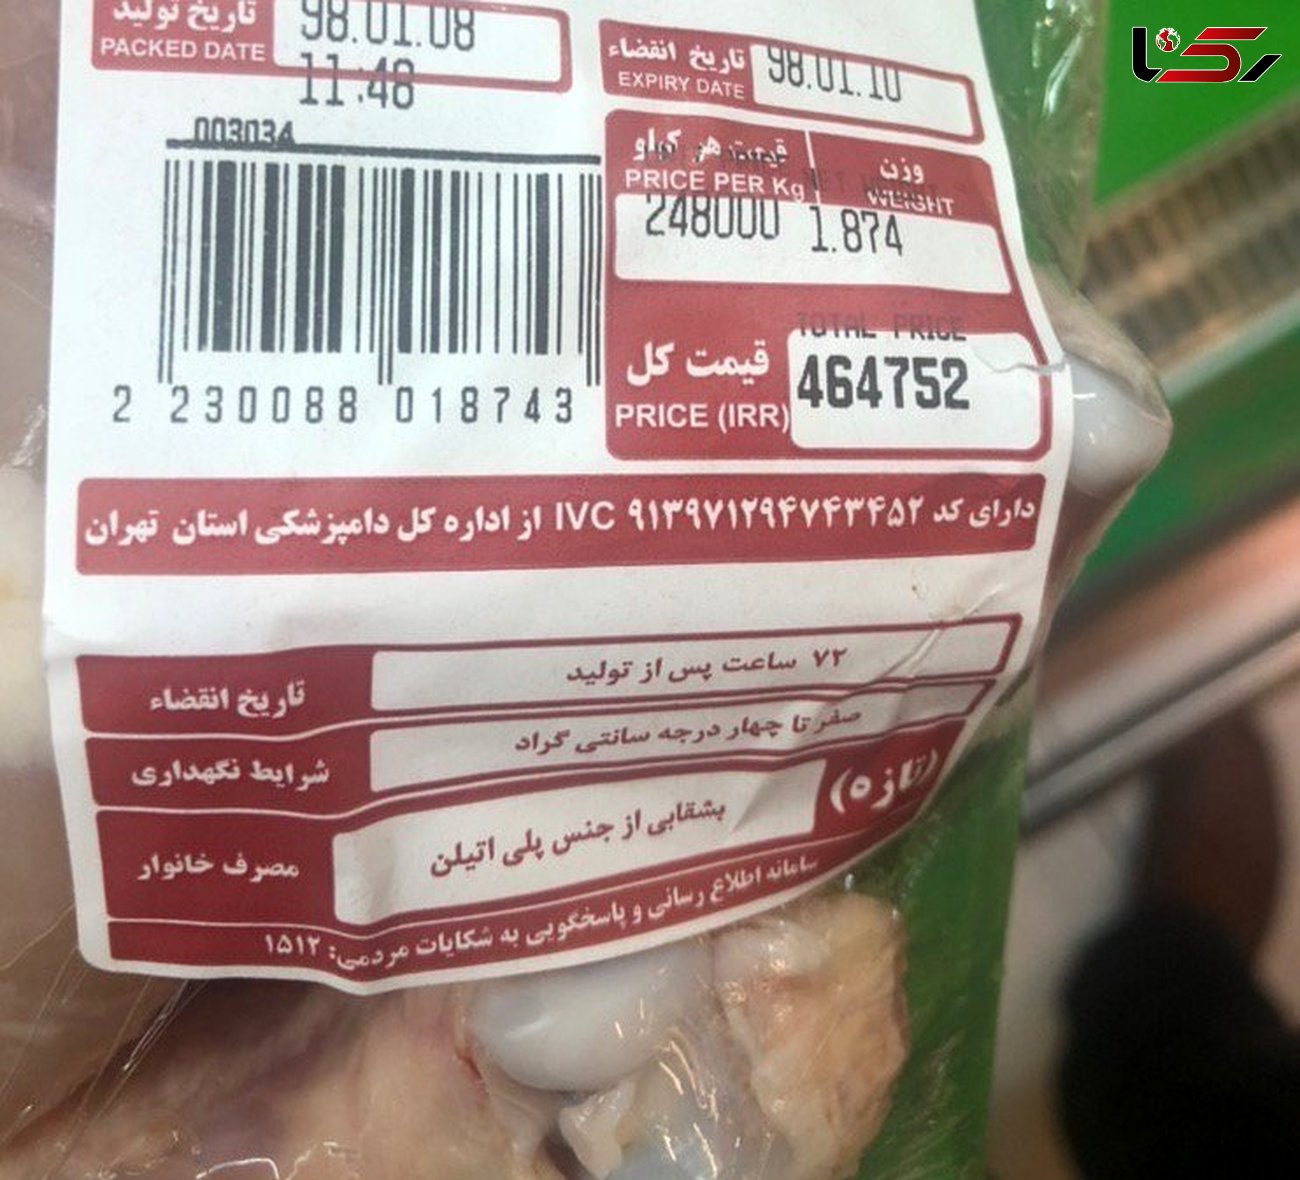  فروش مرغ ۲۴ هزار تومانی در یک فروشگاه زنجیره‌ای+عکس 